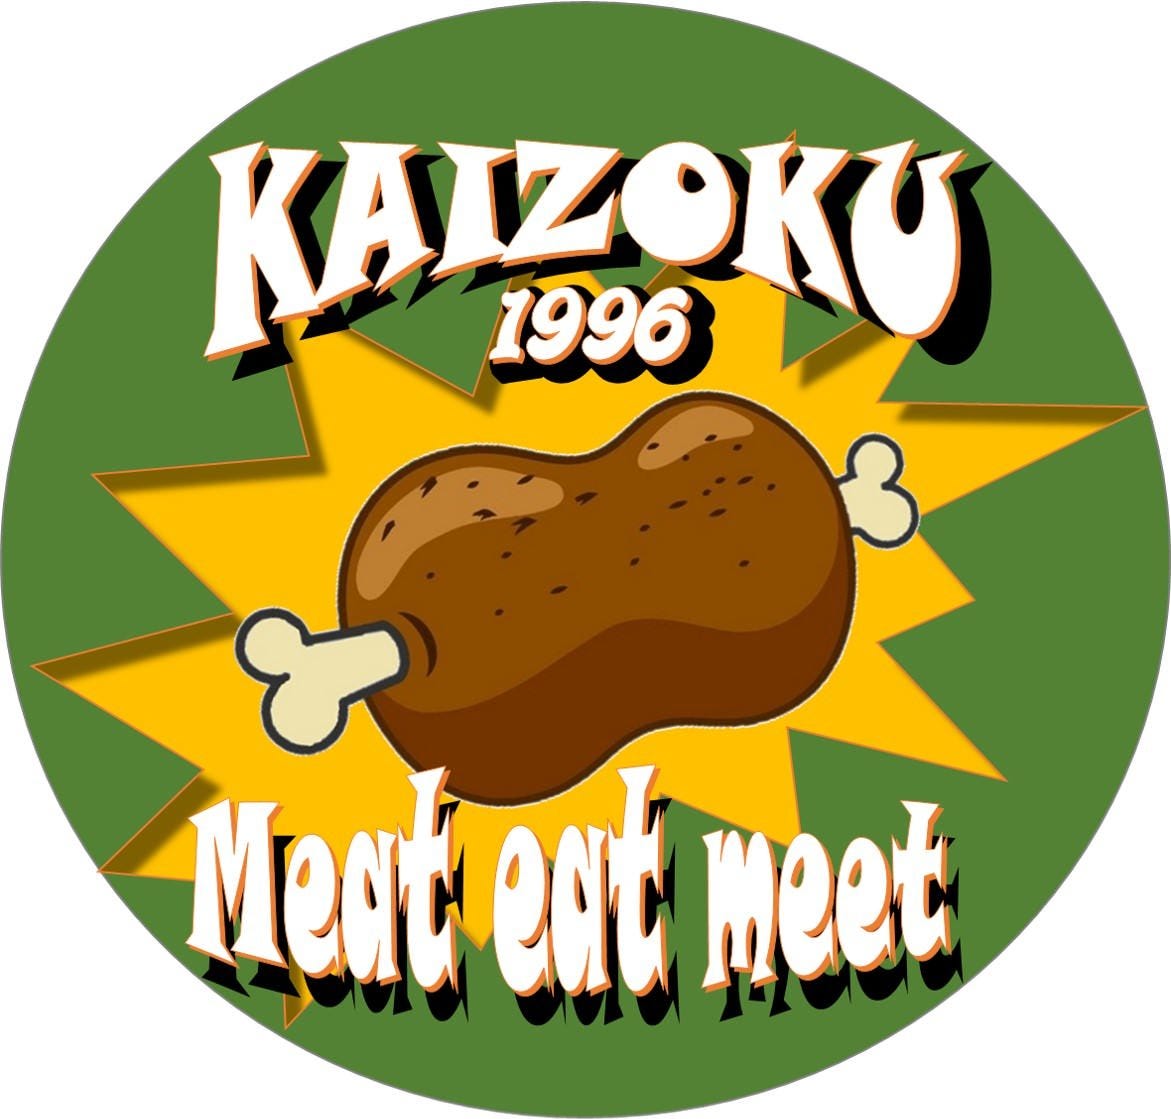 お肉料理と鎌倉野菜 KAIZOKU